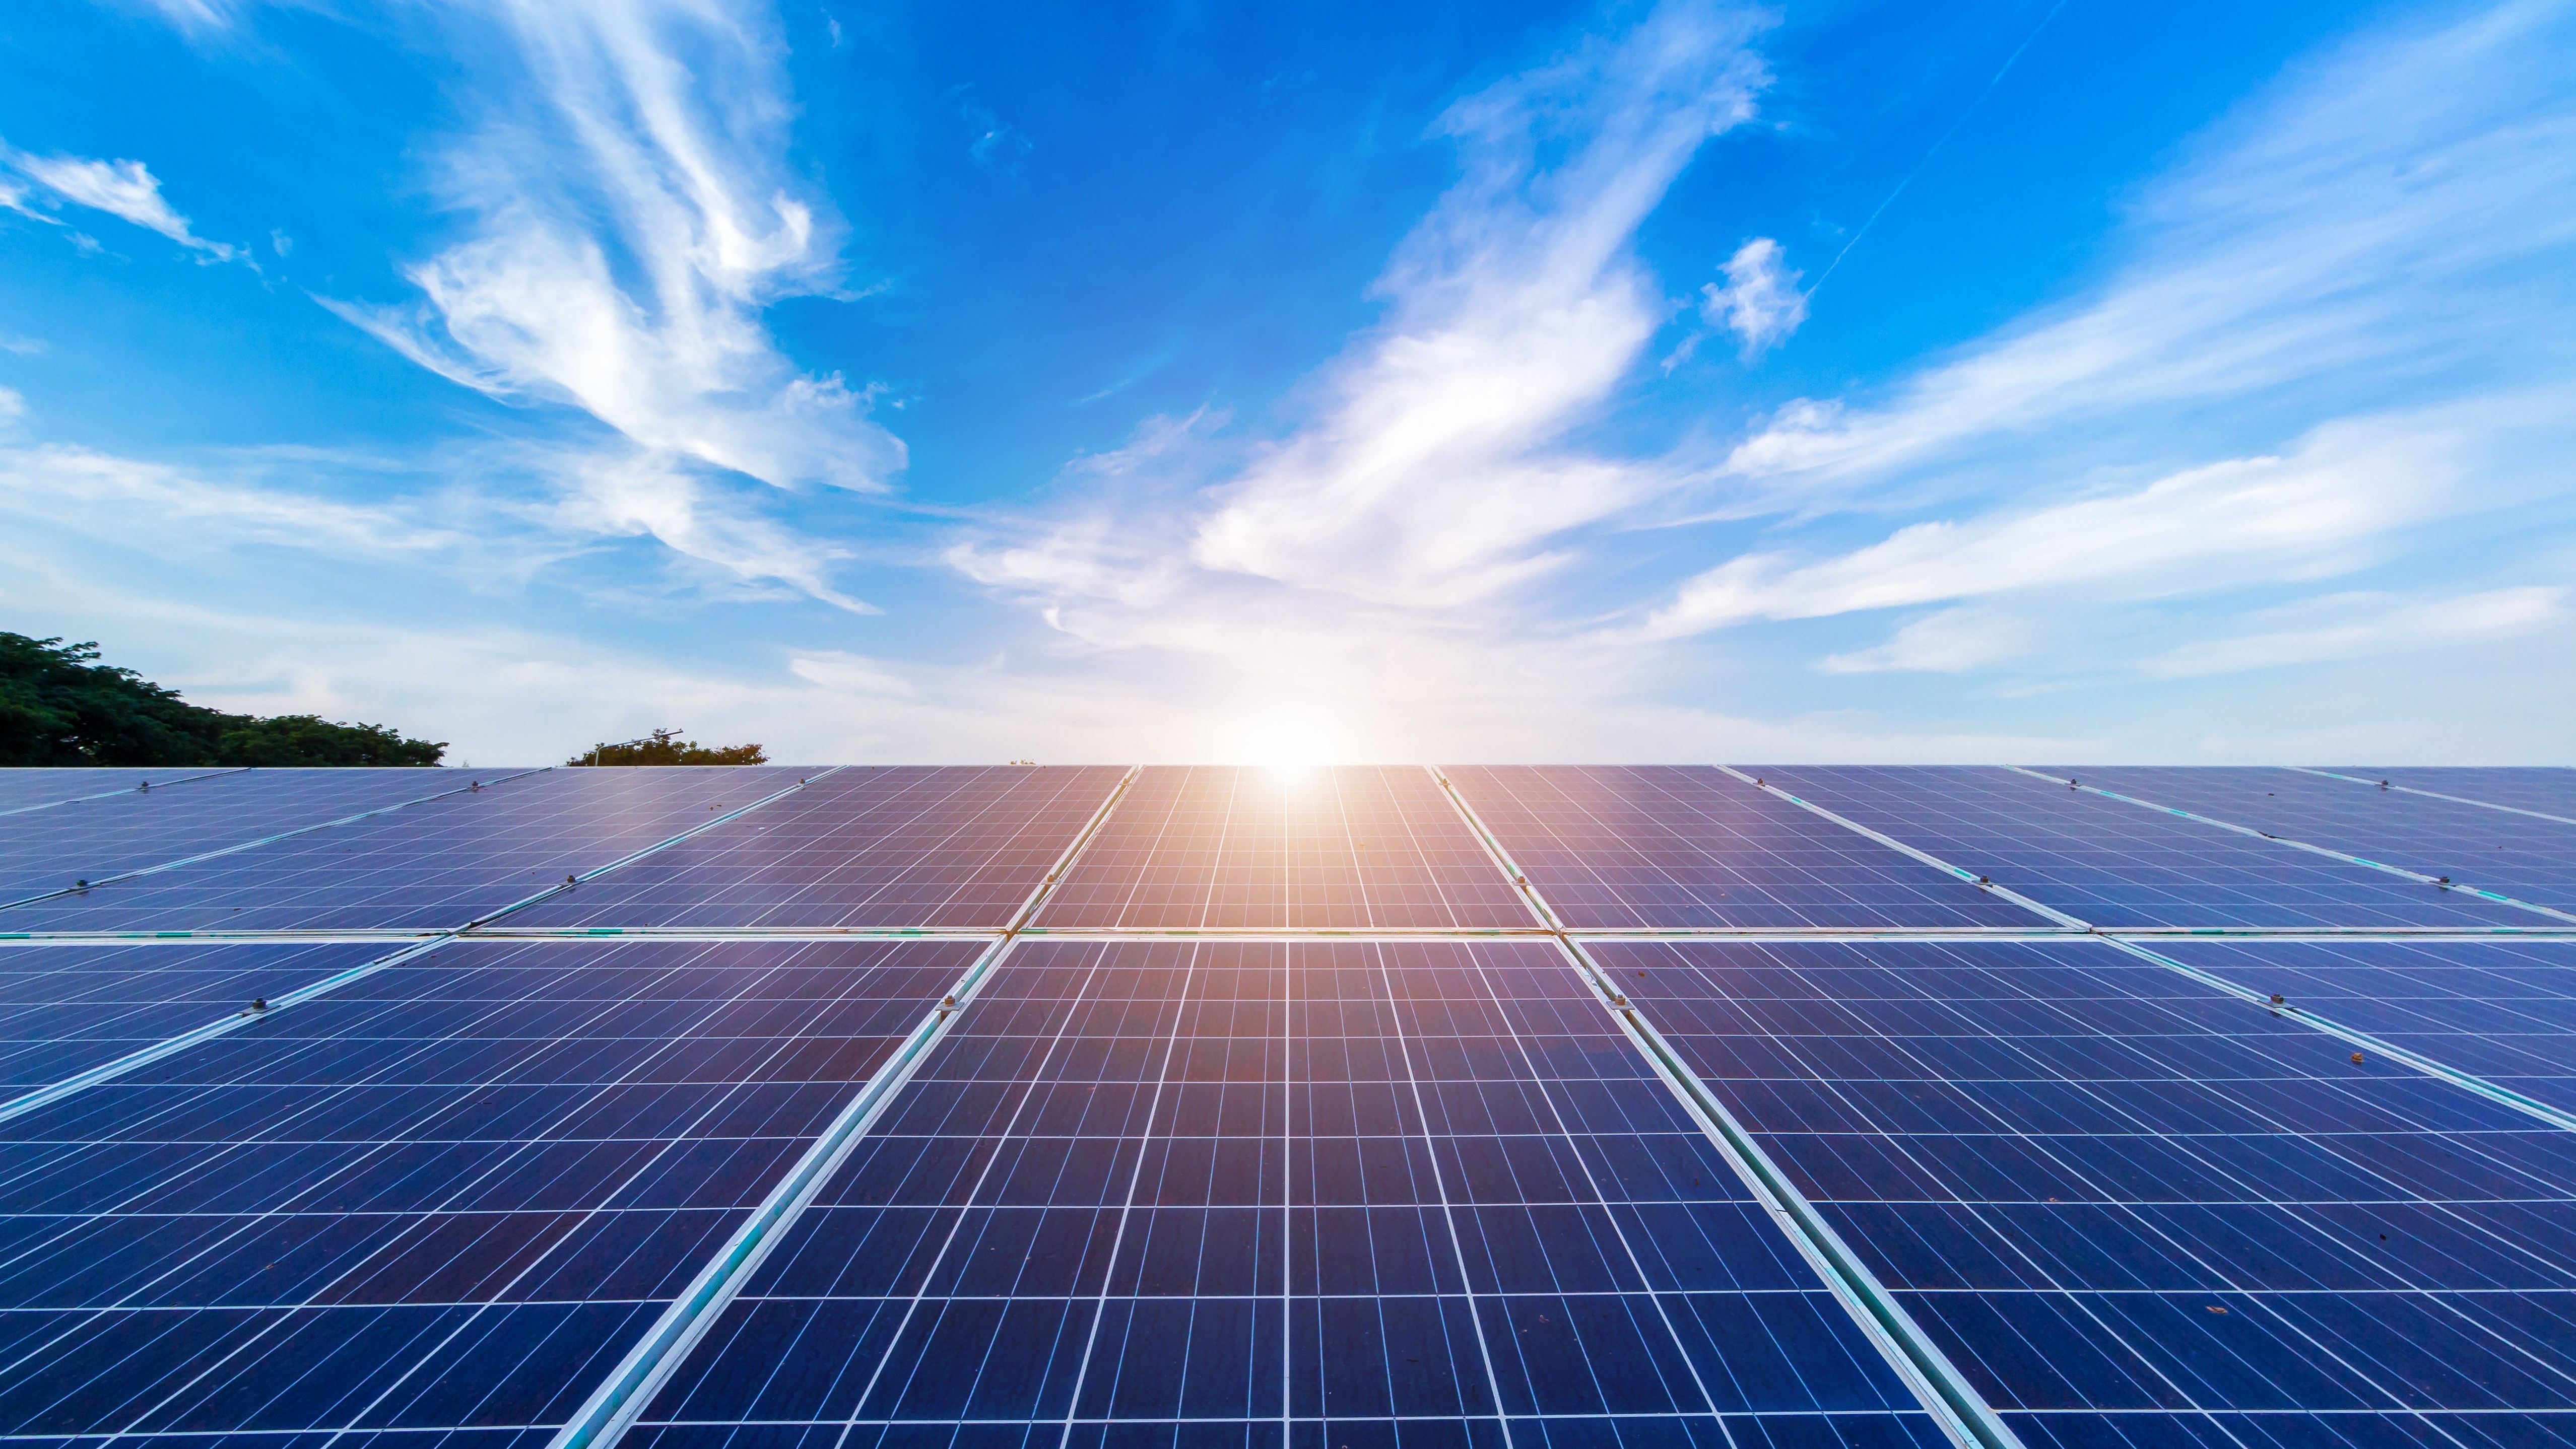 Hva bør du tenke på når du skal investere i solenergi og solcellepanel?